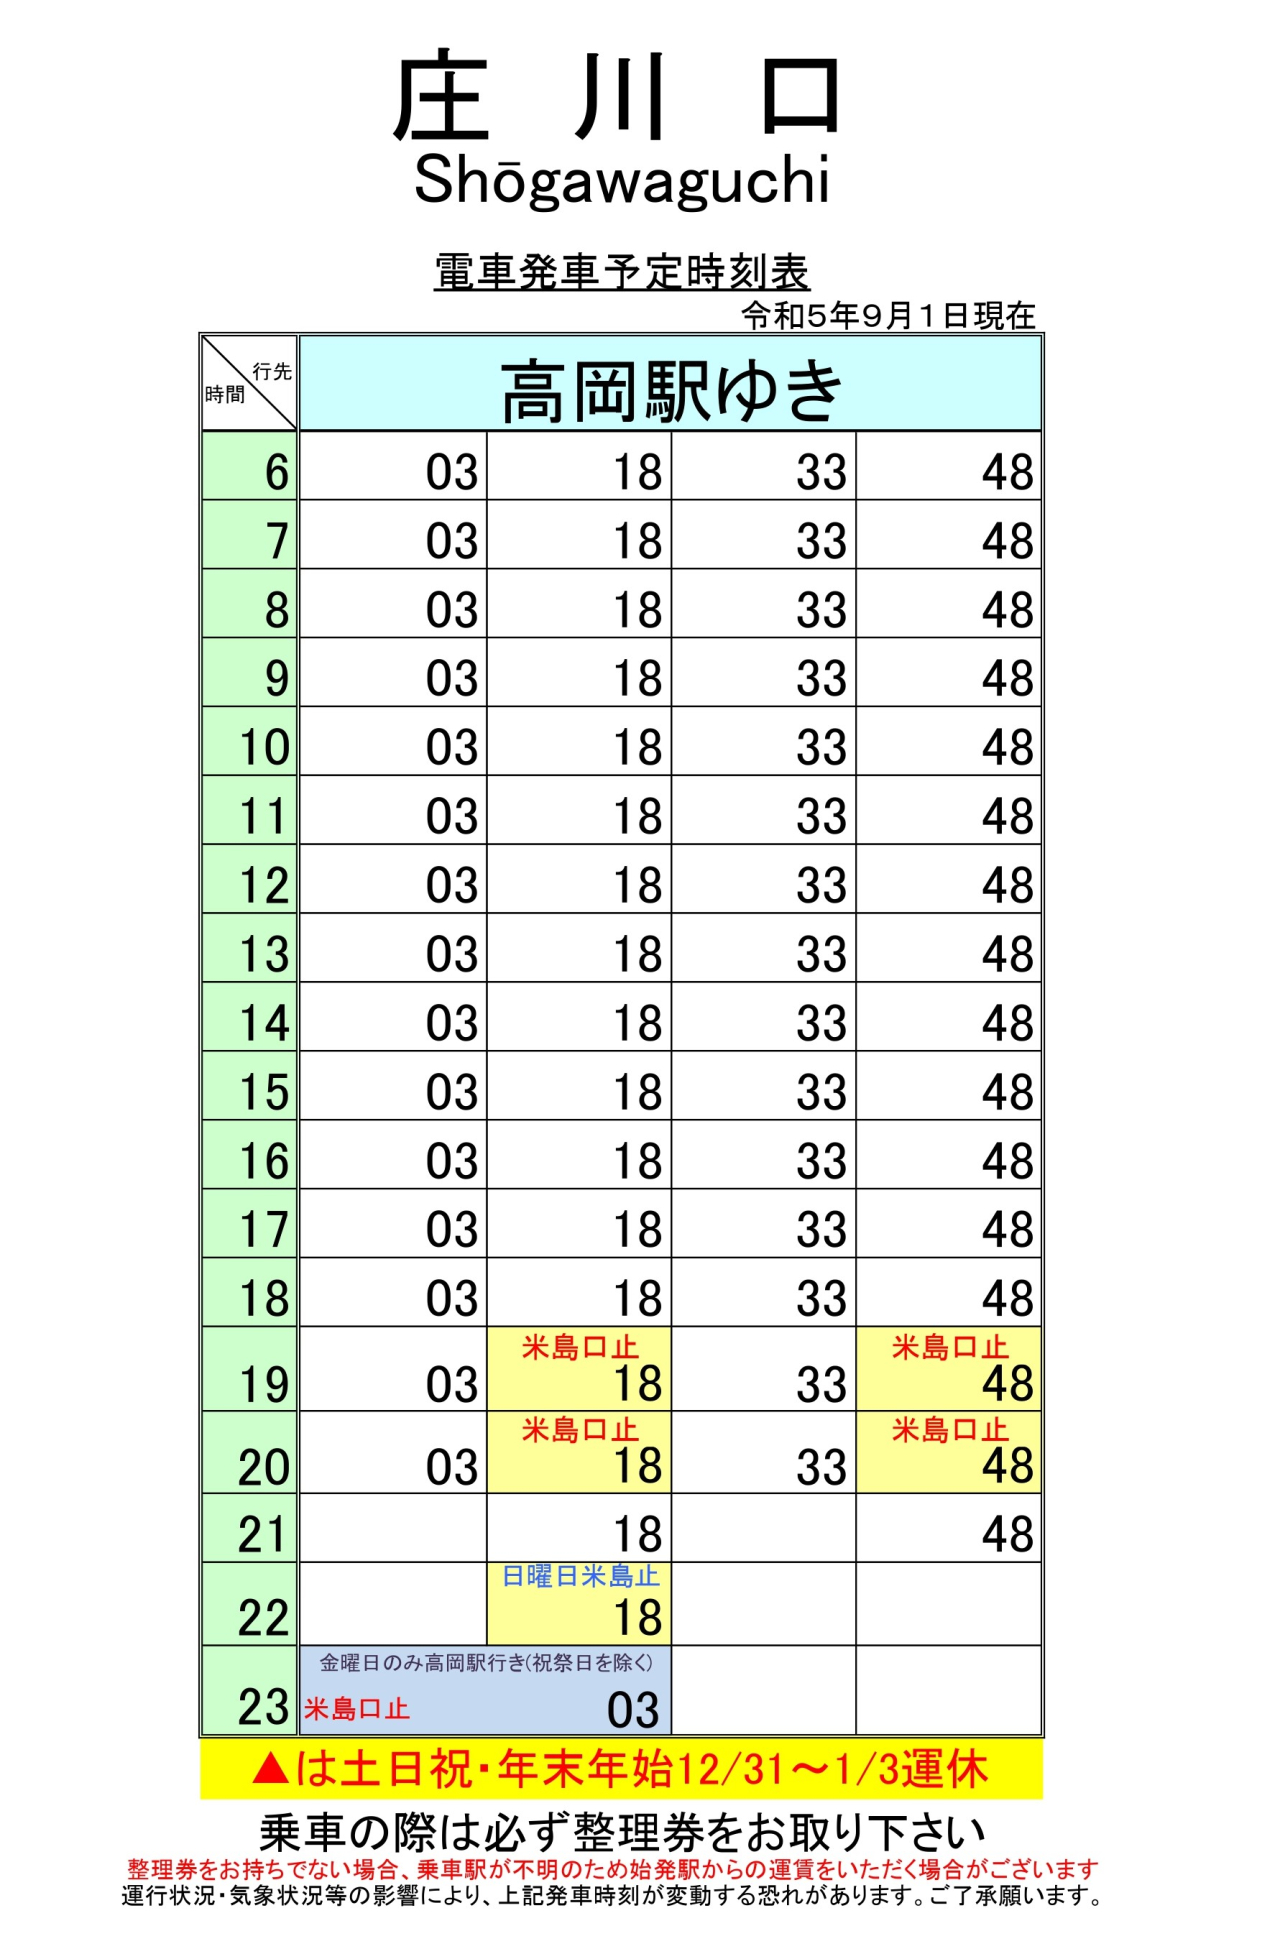 最新5.5.1改正各駅時刻表(庄川口)_page-0001